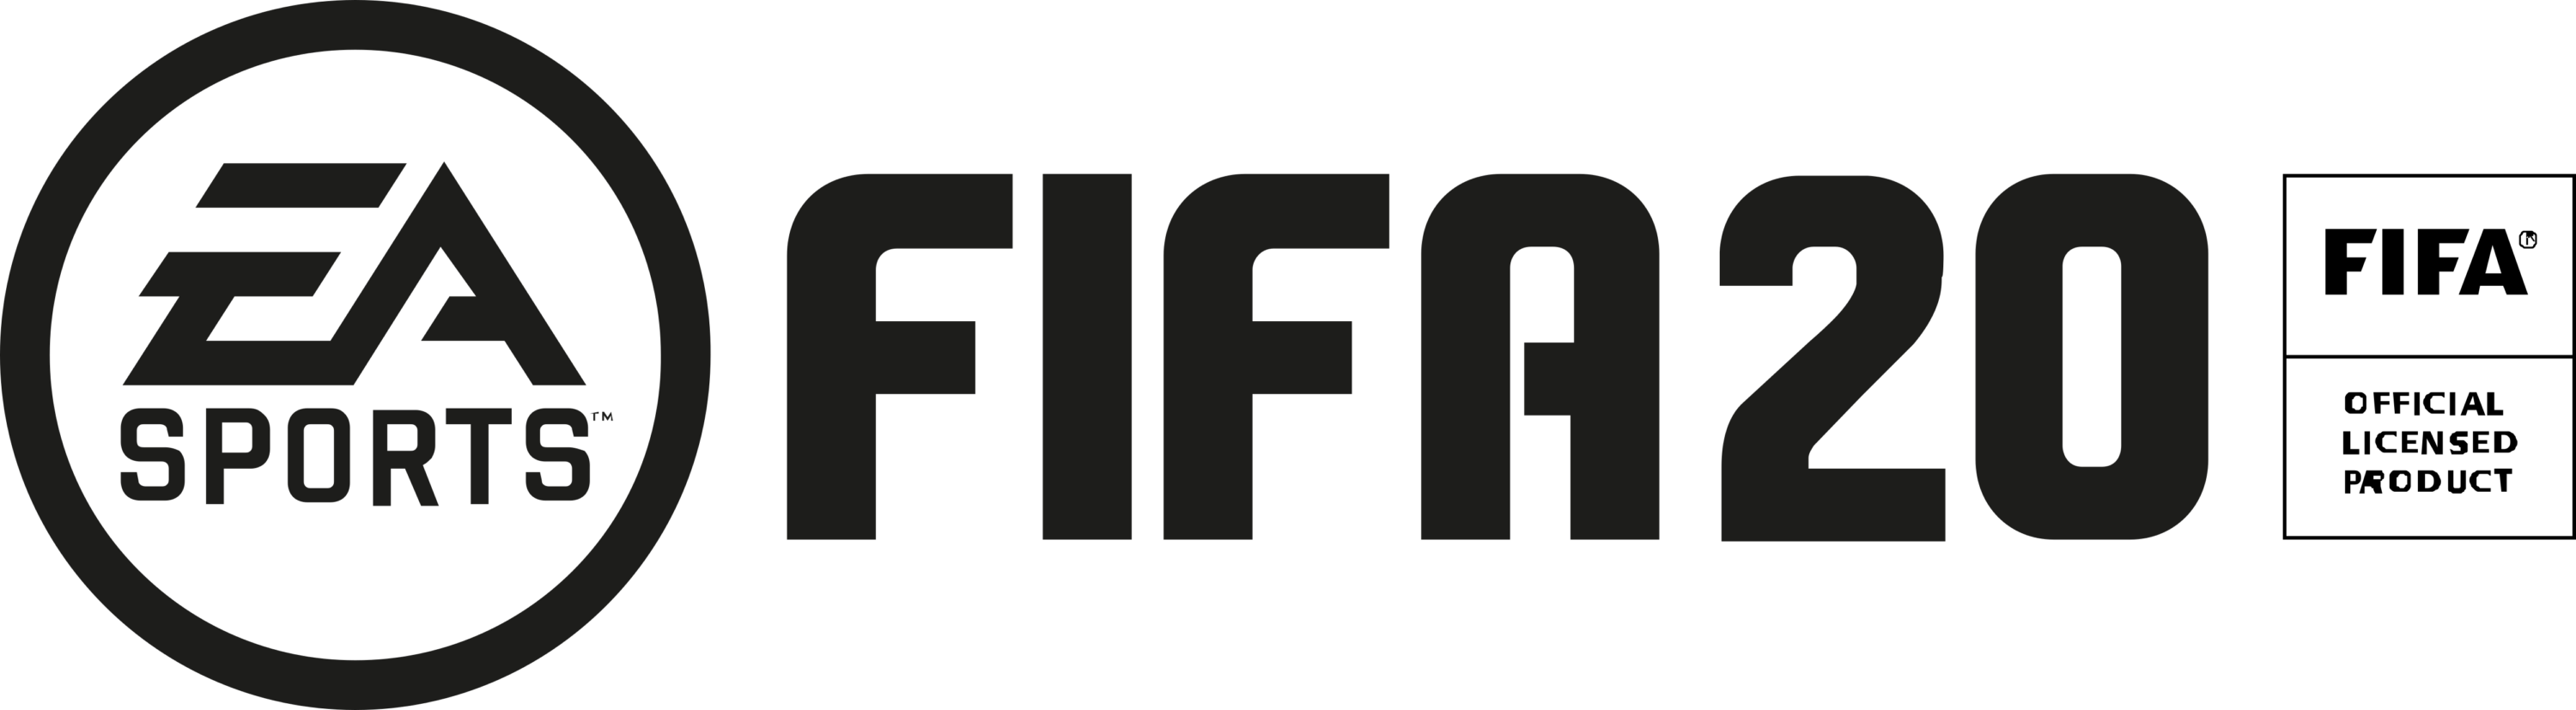 EA Sports FIFA 2020 Logo horizontally